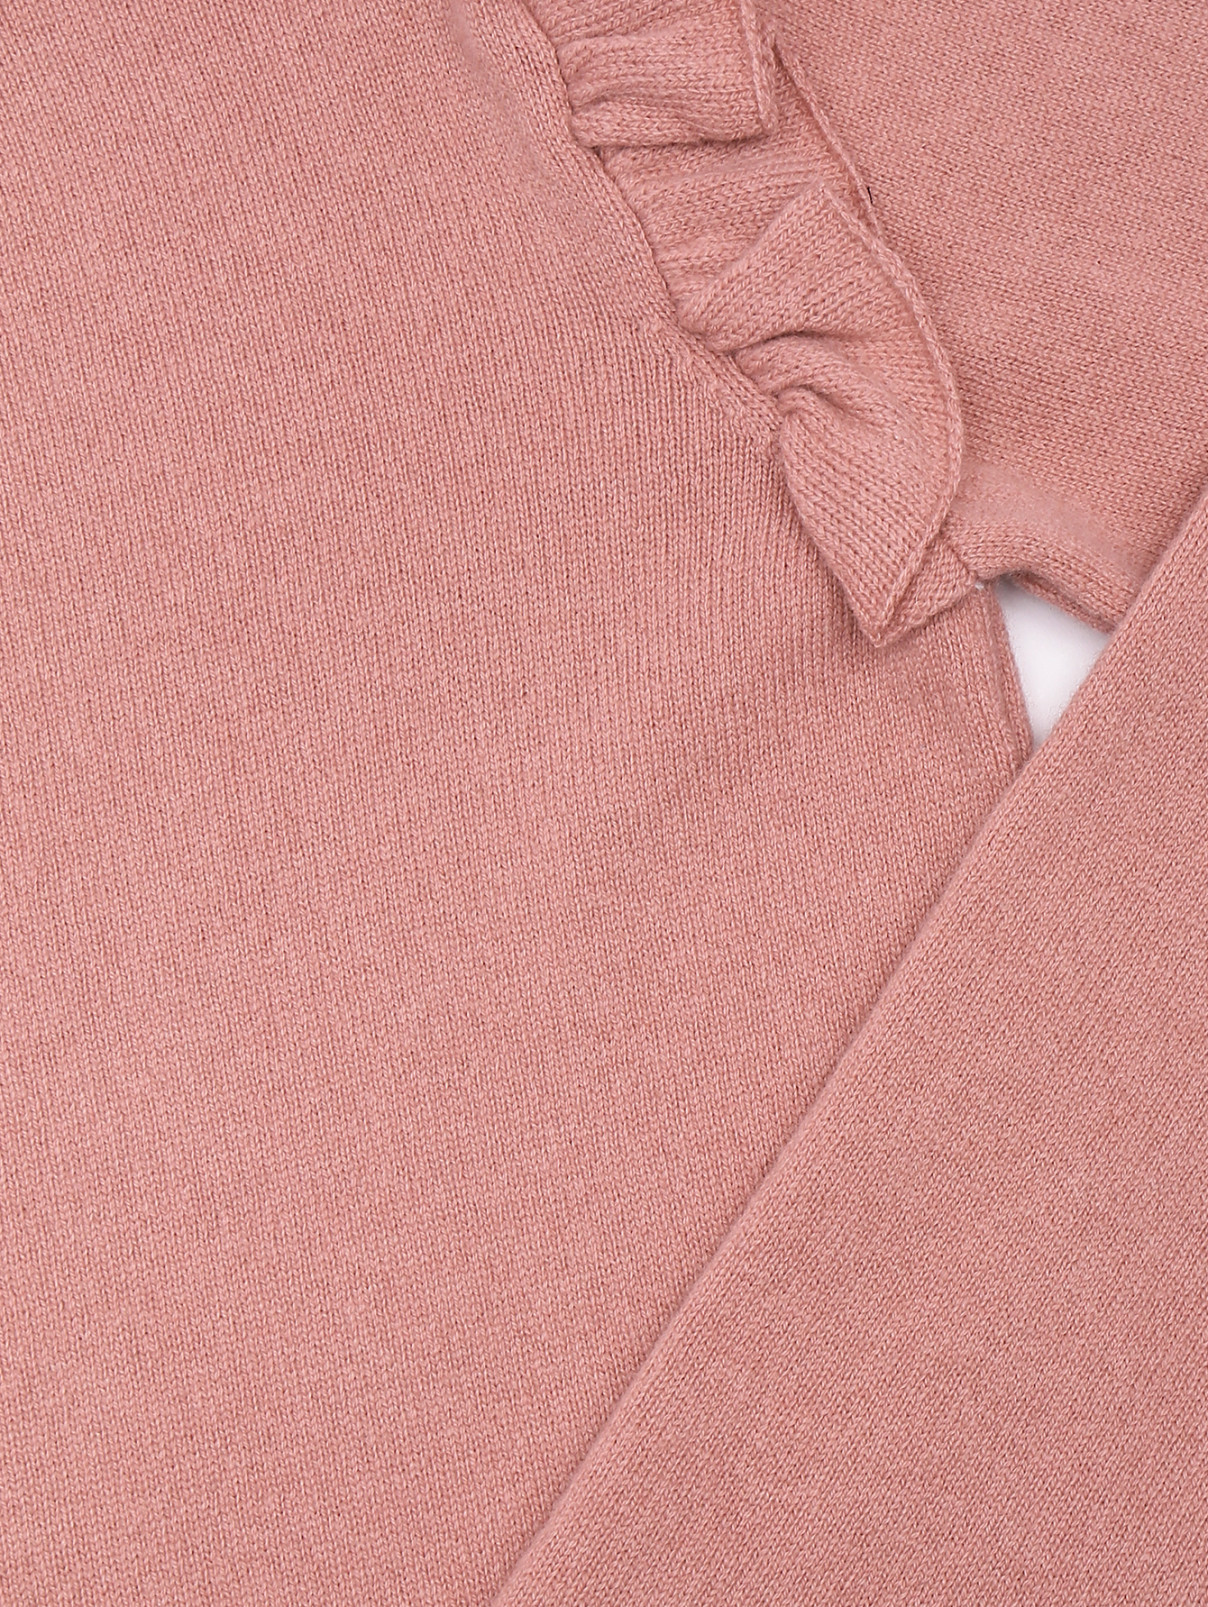 Джемпер из шерсти и кашемира Tomax  –  Деталь  – Цвет:  Розовый